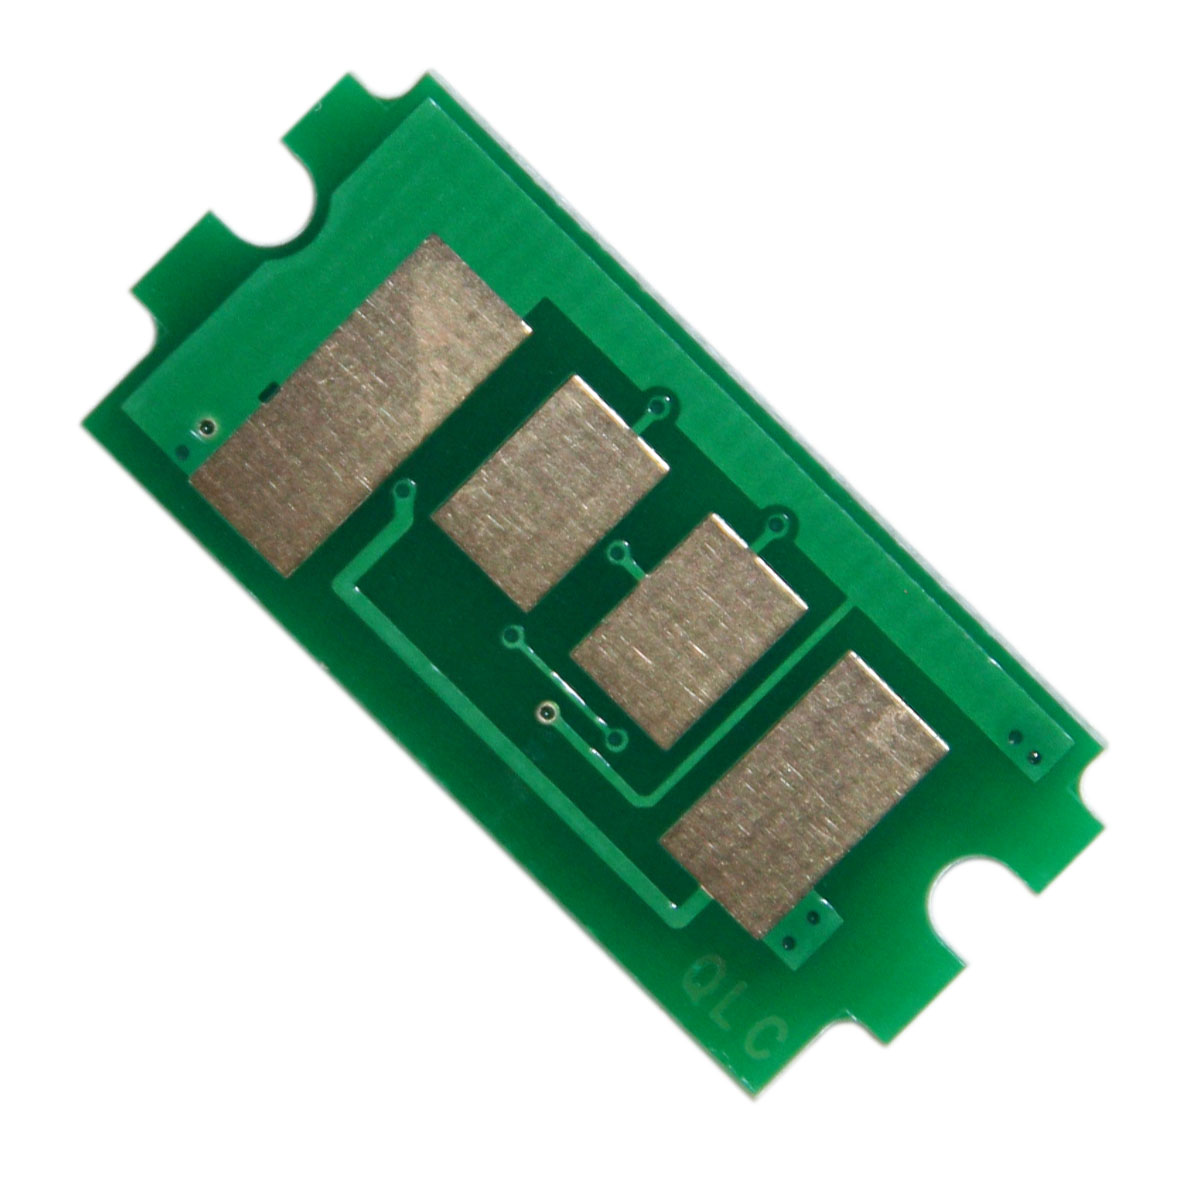 Chip zliczający Kyocera-Mita FS 4300